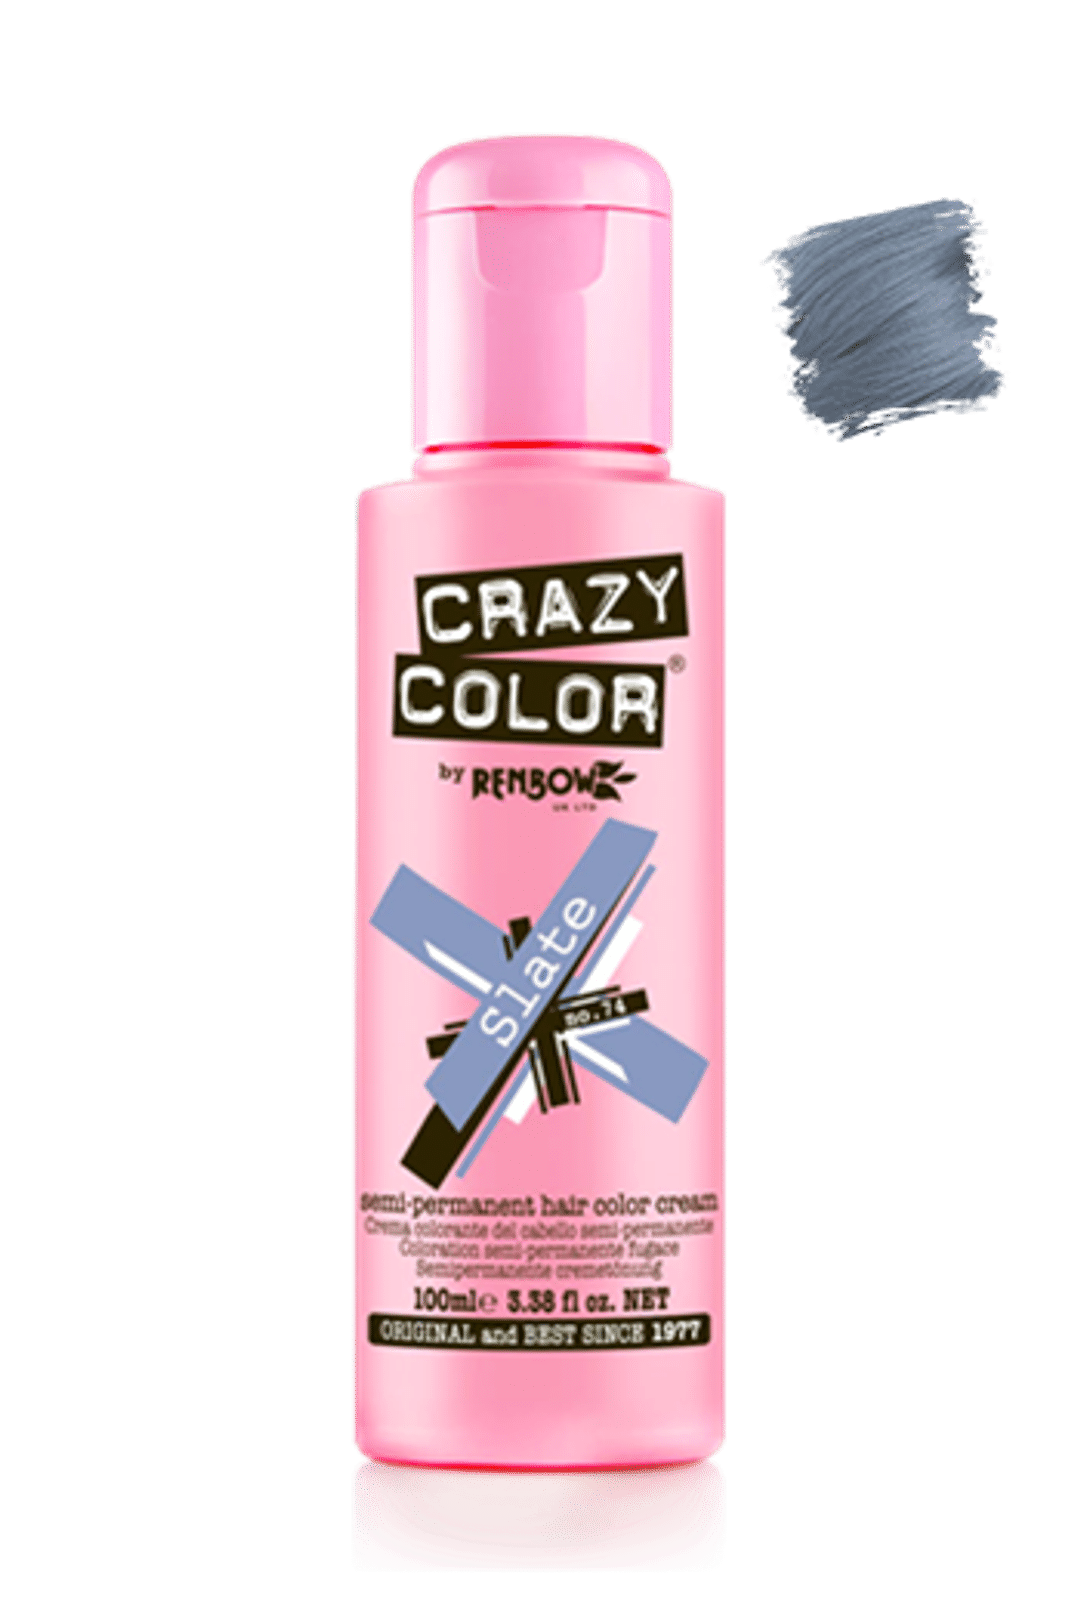 Crazy Color Semi Permanent Hair Color Cream - Slate